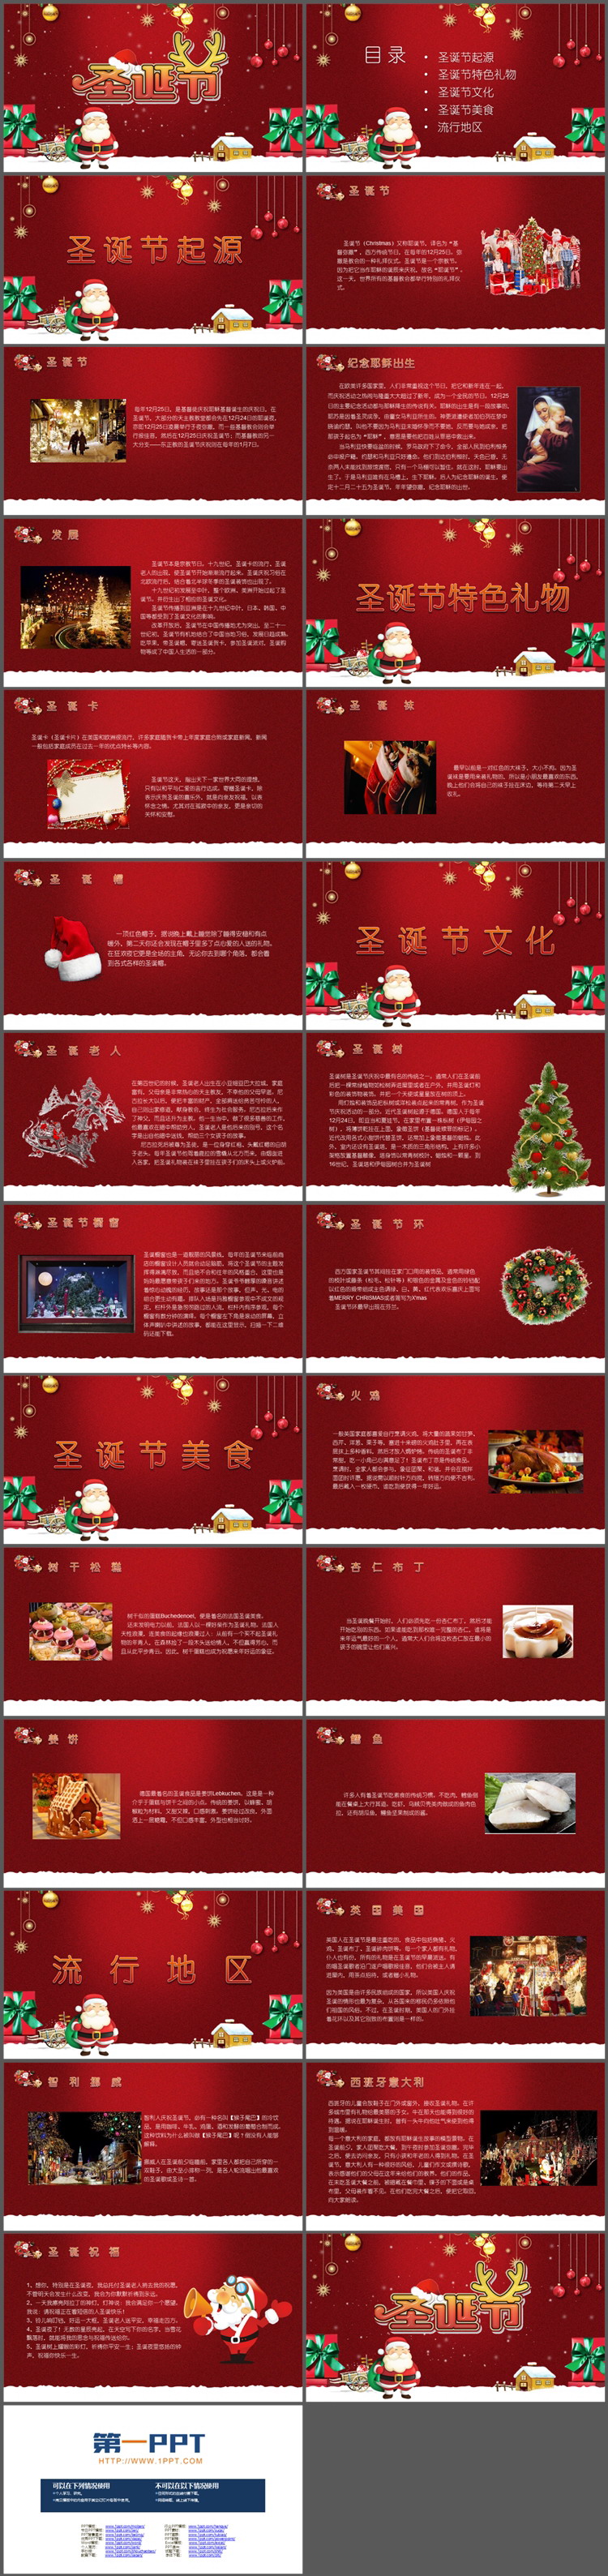 红色卡通圣诞老人背景圣诞节介绍PPT模板下载